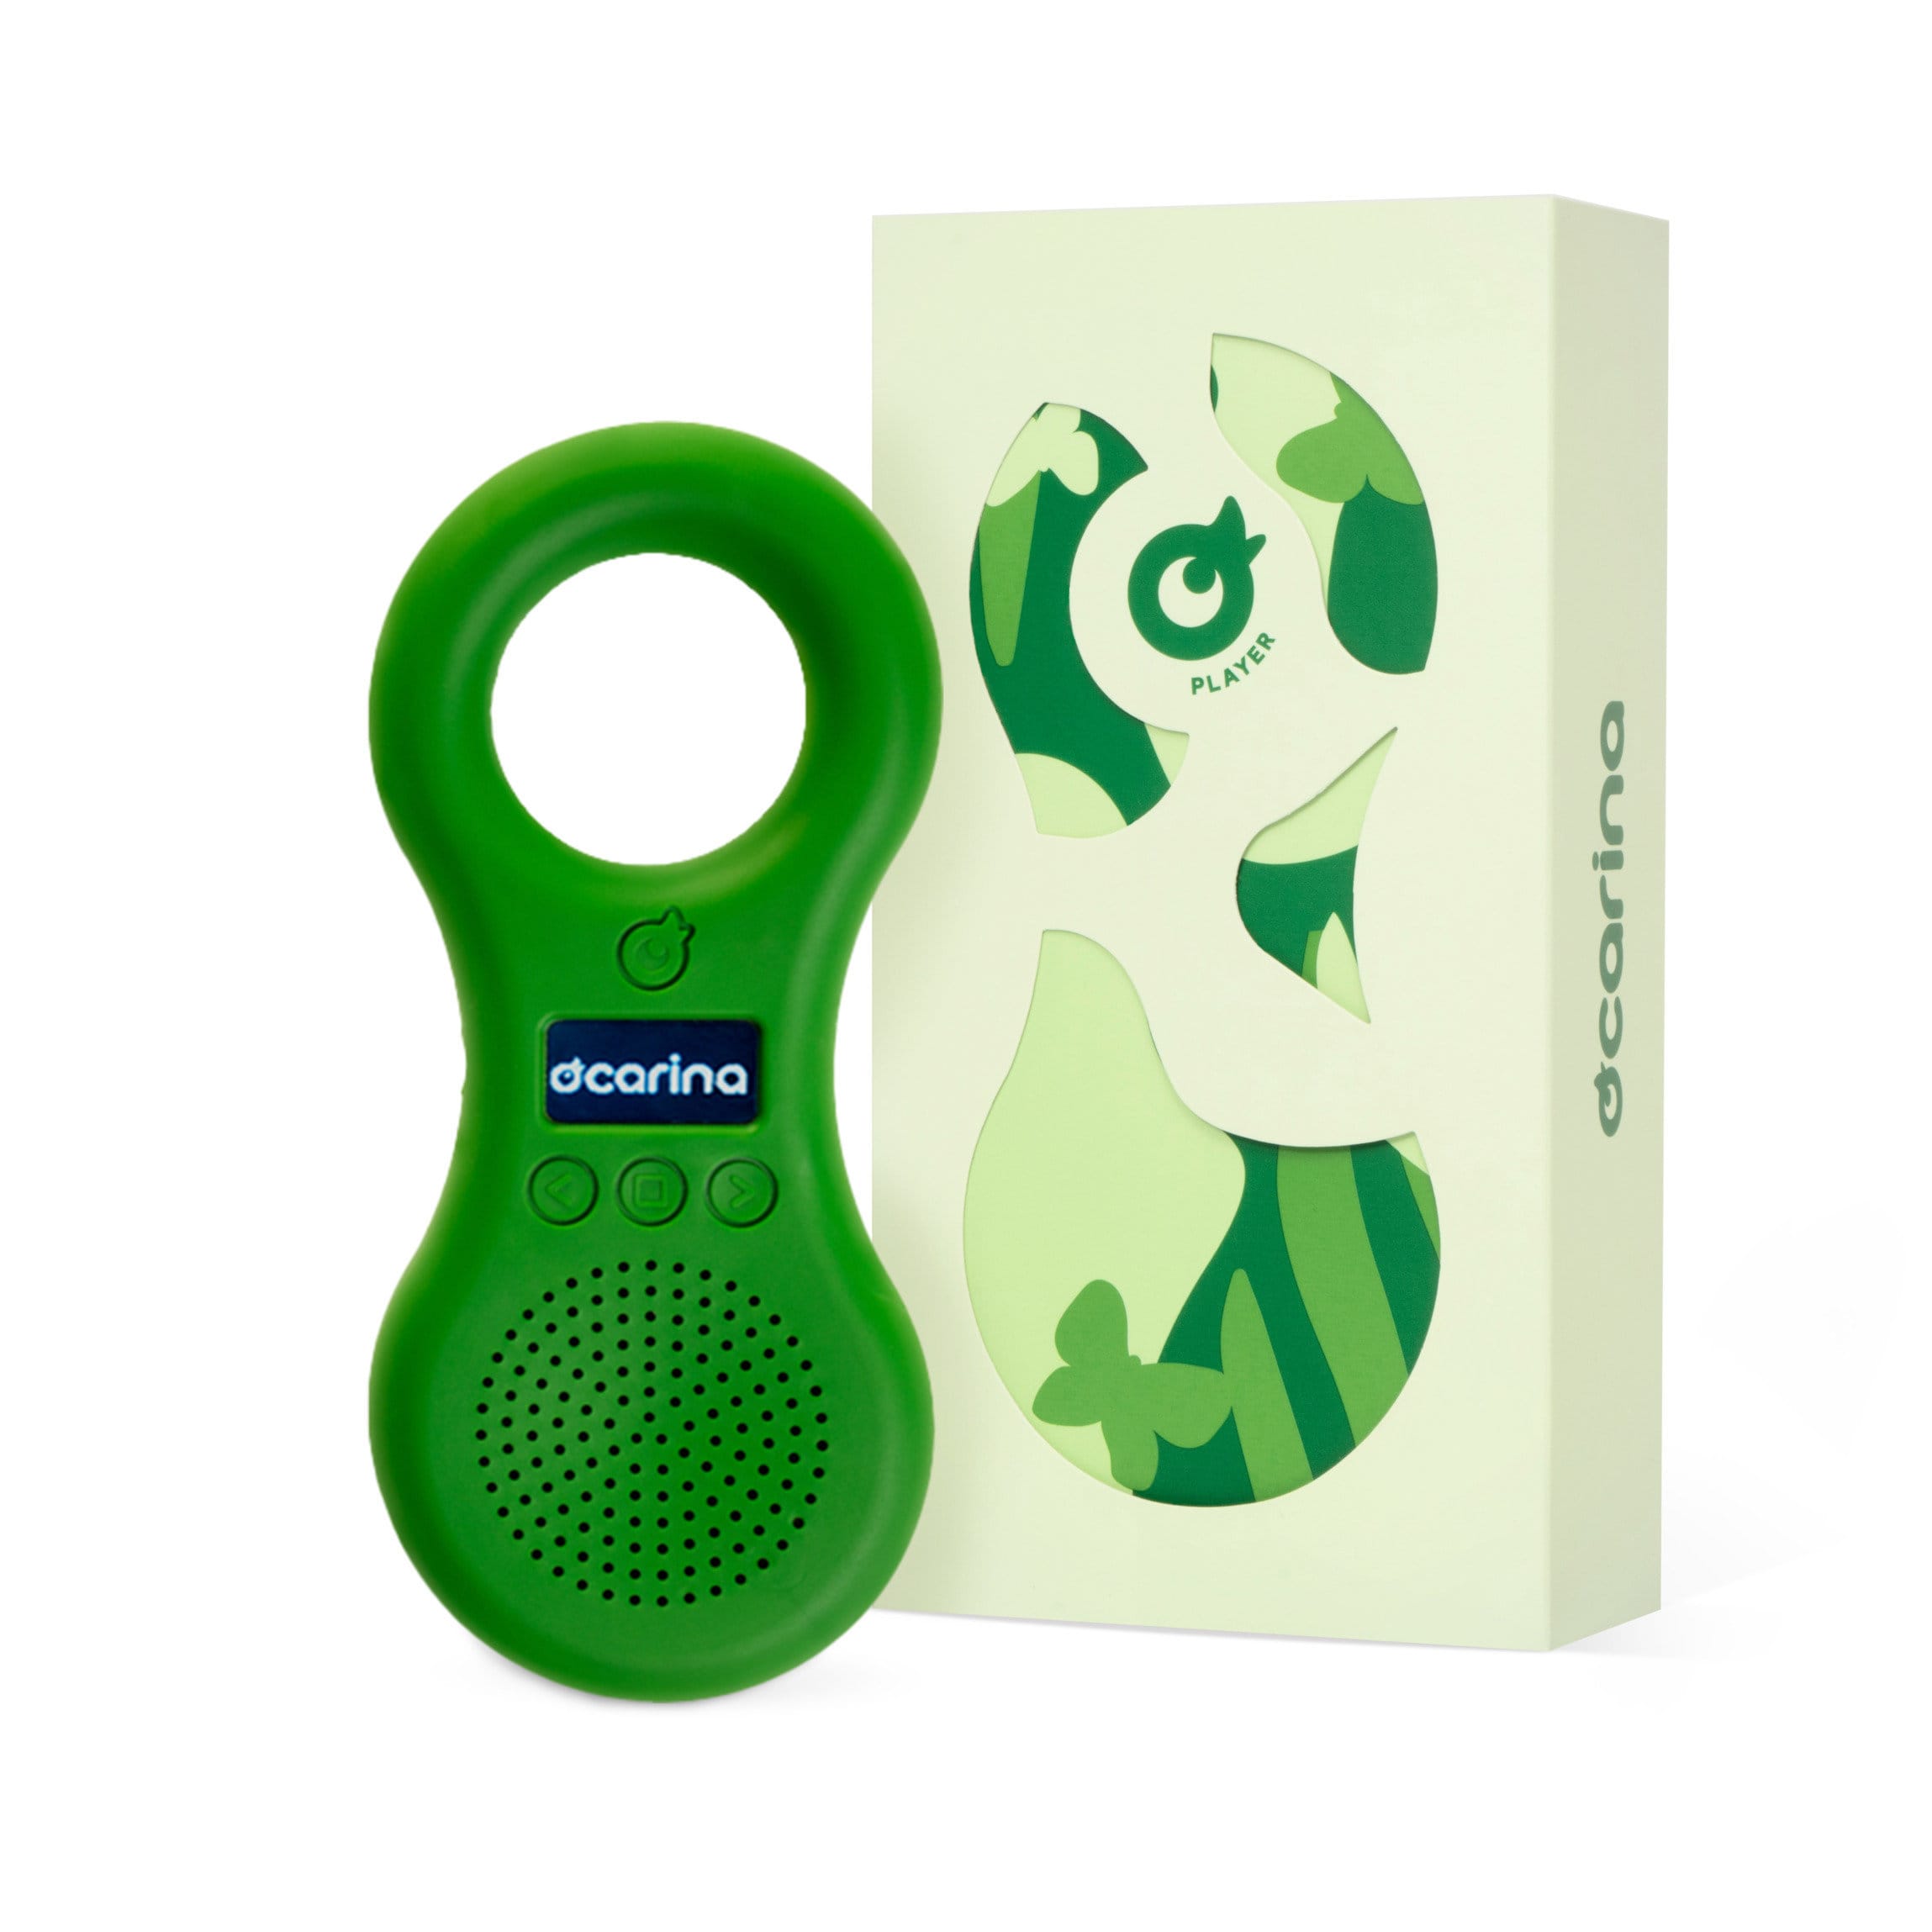 Ocarina music player : le lecteur MP3 idéal pour les enfants